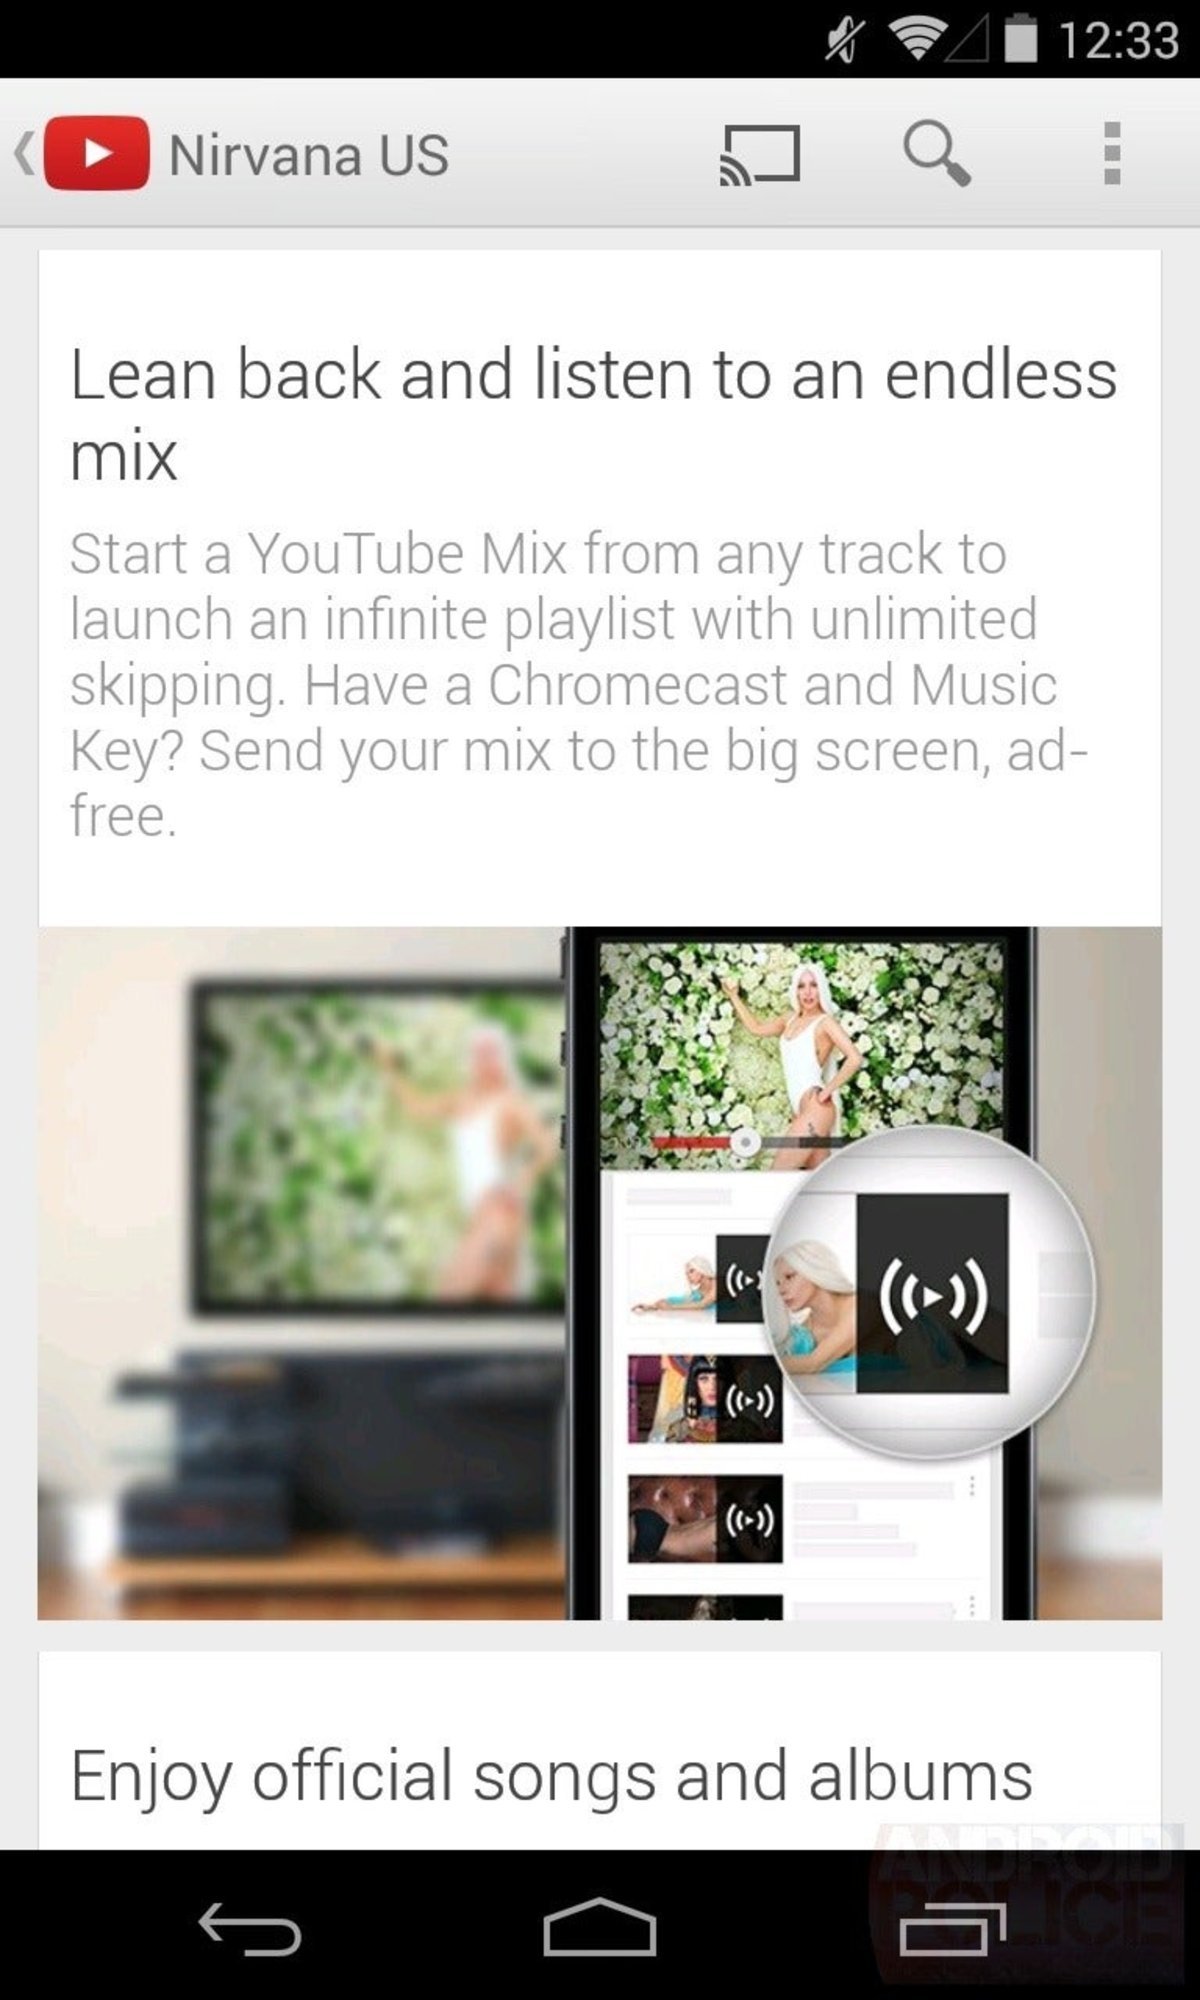 YouTube Music Key, se filtra toda la información del nuevo servicio de música de Google